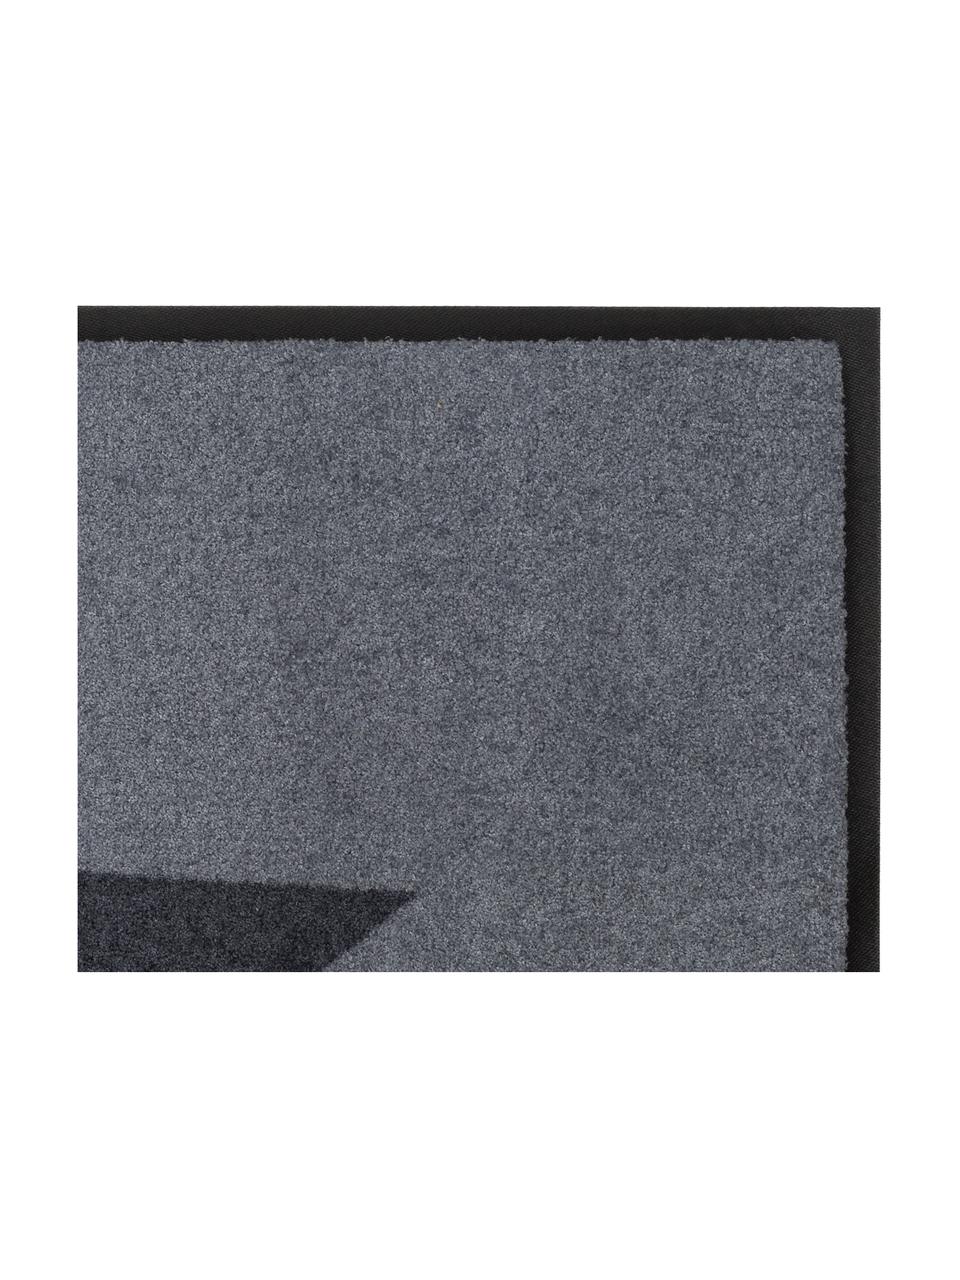 Fußmatte Big Star, Oberseite: 100% Polyamid, Unterseite: Gummi, Grau, Anthrazit, 80 x 120 cm